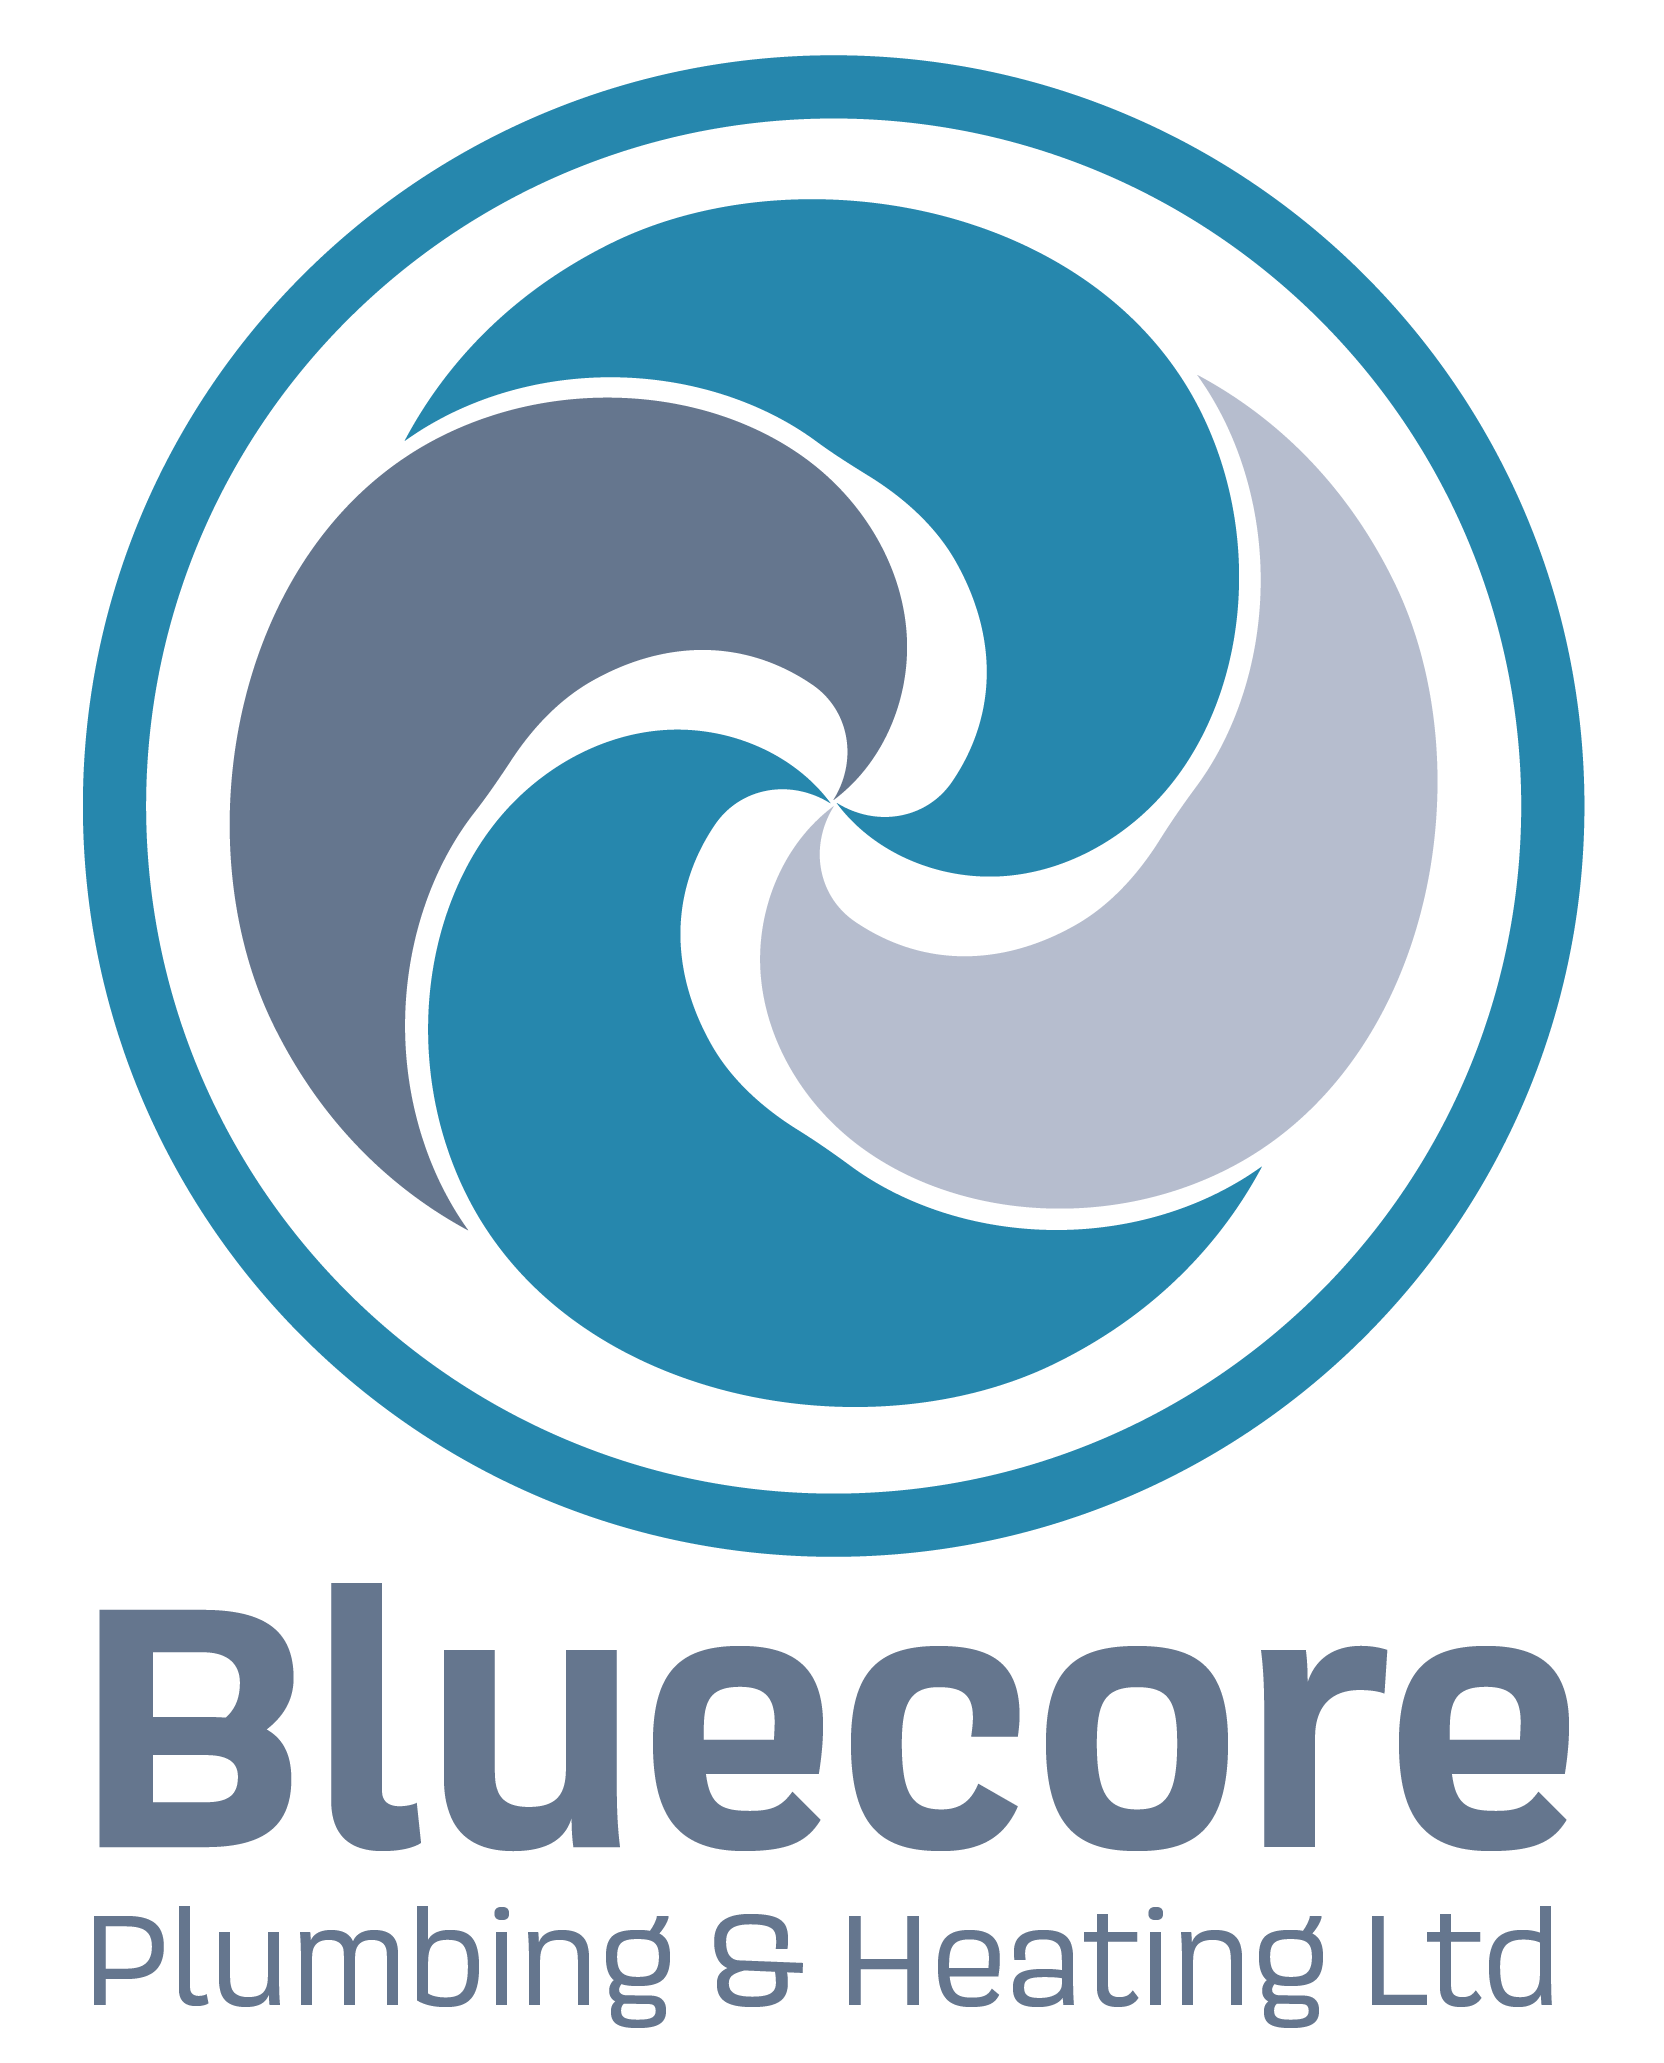 Bluecore Plumbing & Heating